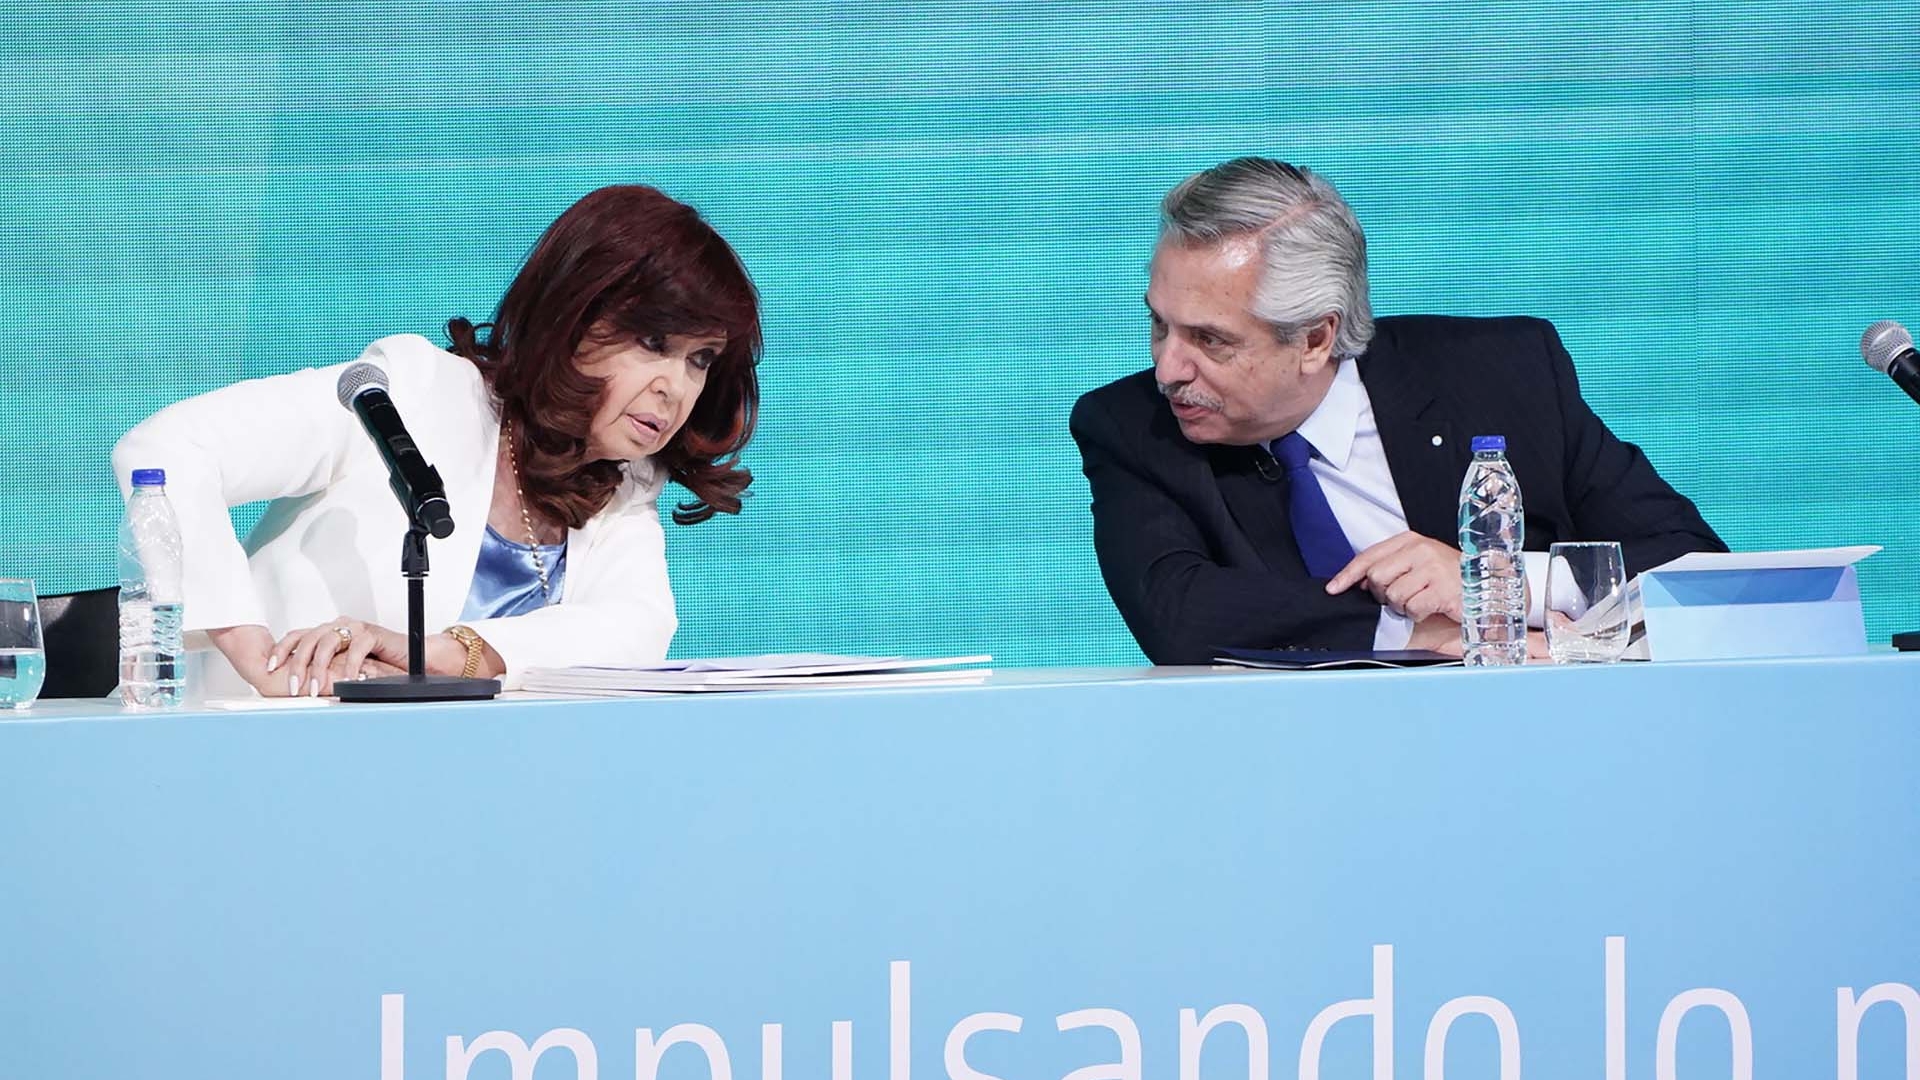 Pax armada. Cristina Kirchner y Alberto Fernández bajaron el tono de la confrontación. (foto Franco Fafasuli)